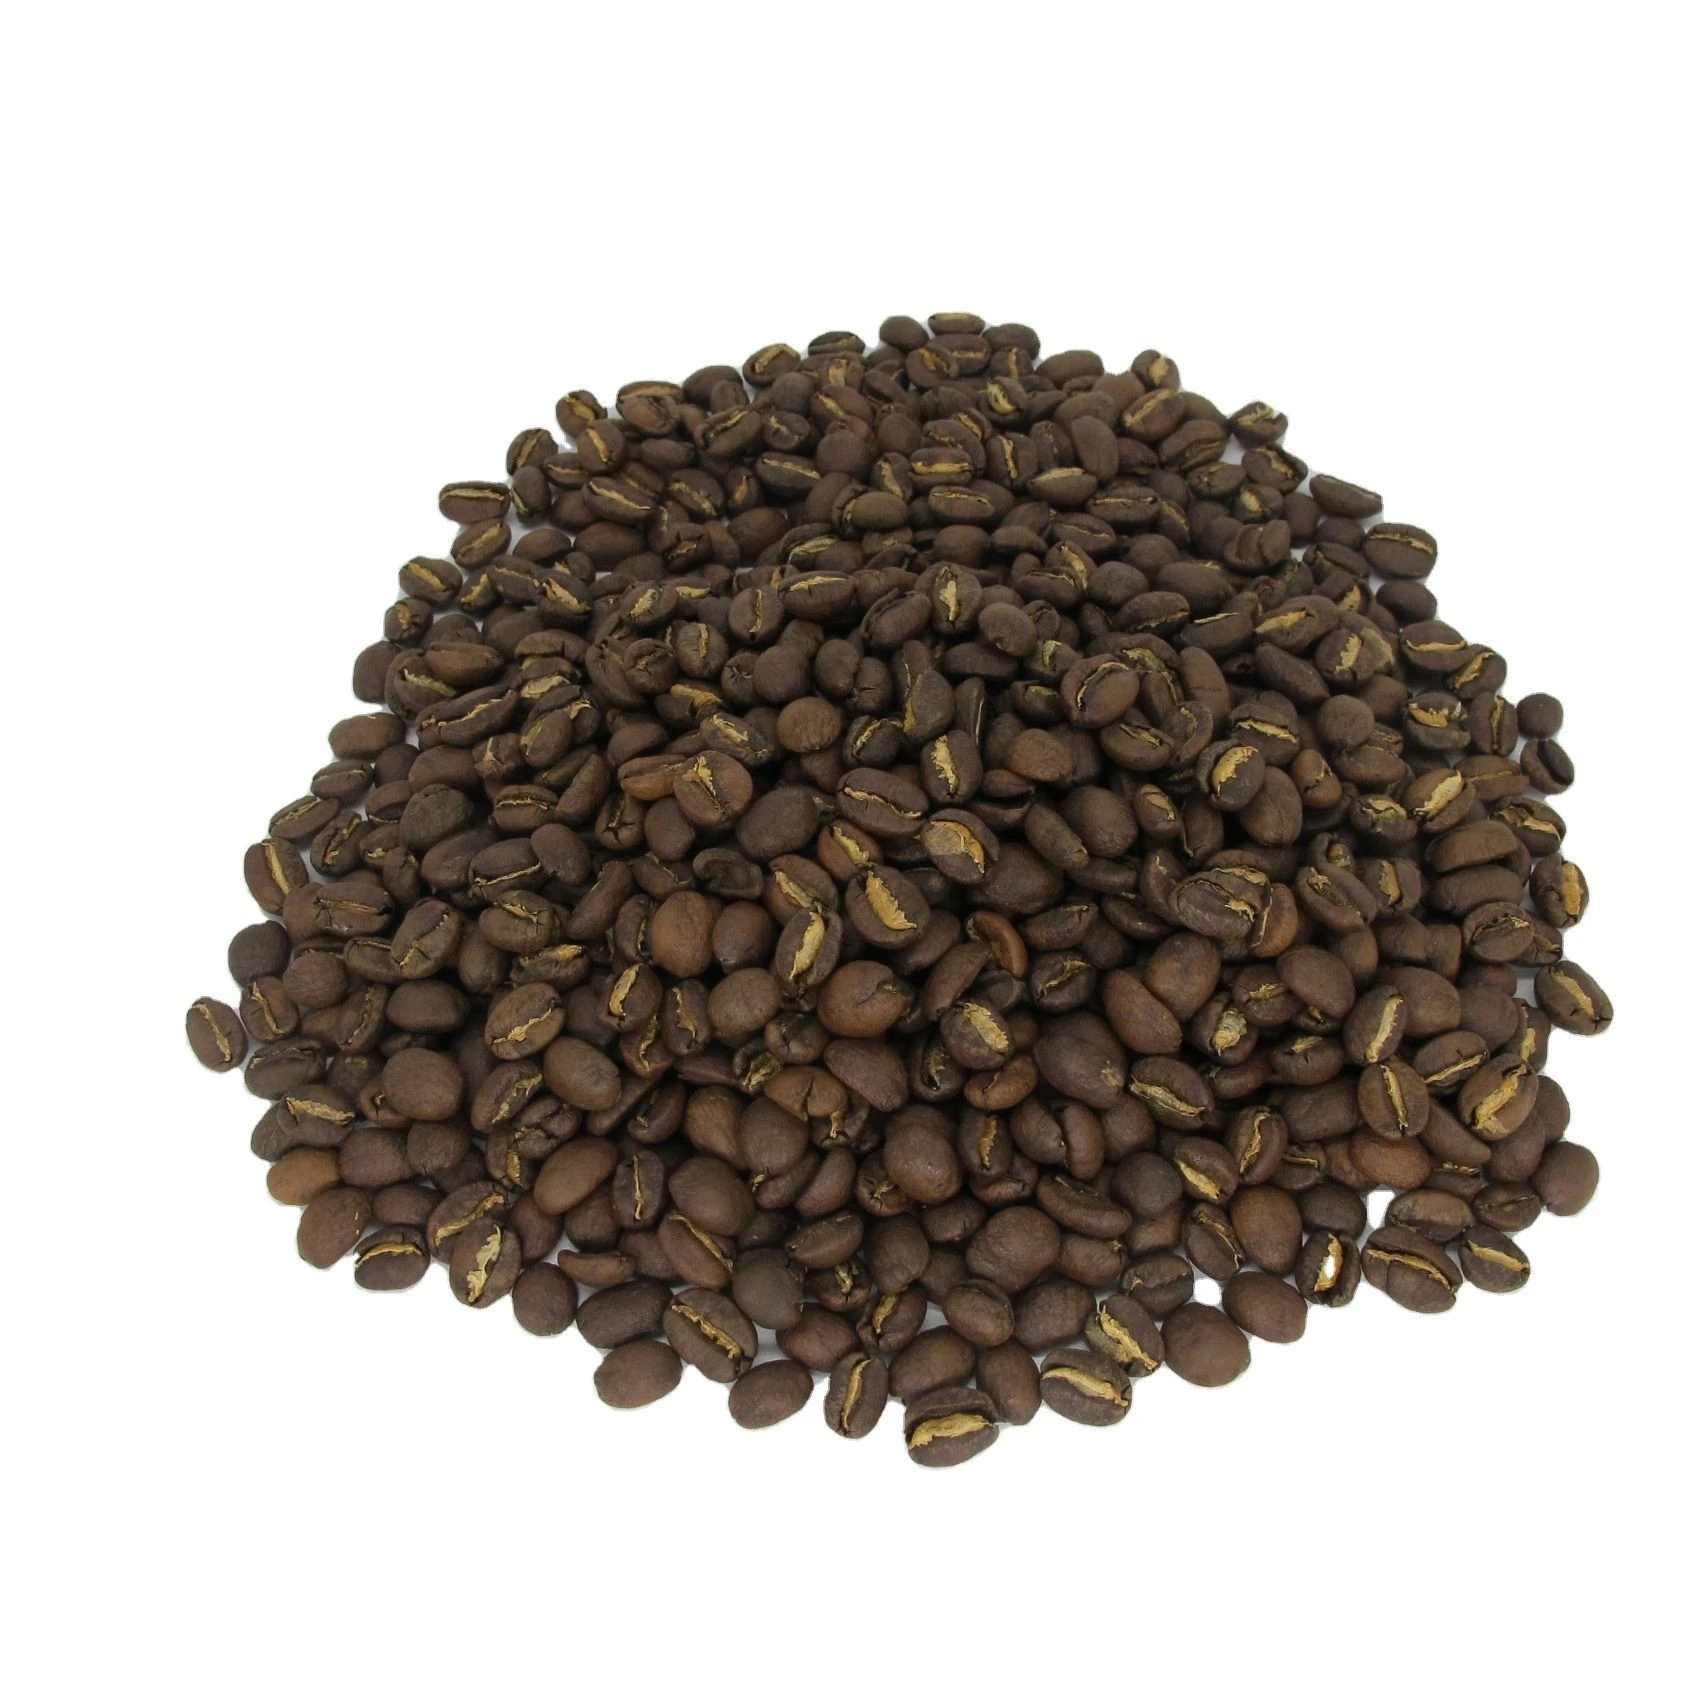 Freshly Roasted Arabica Coffee Beans